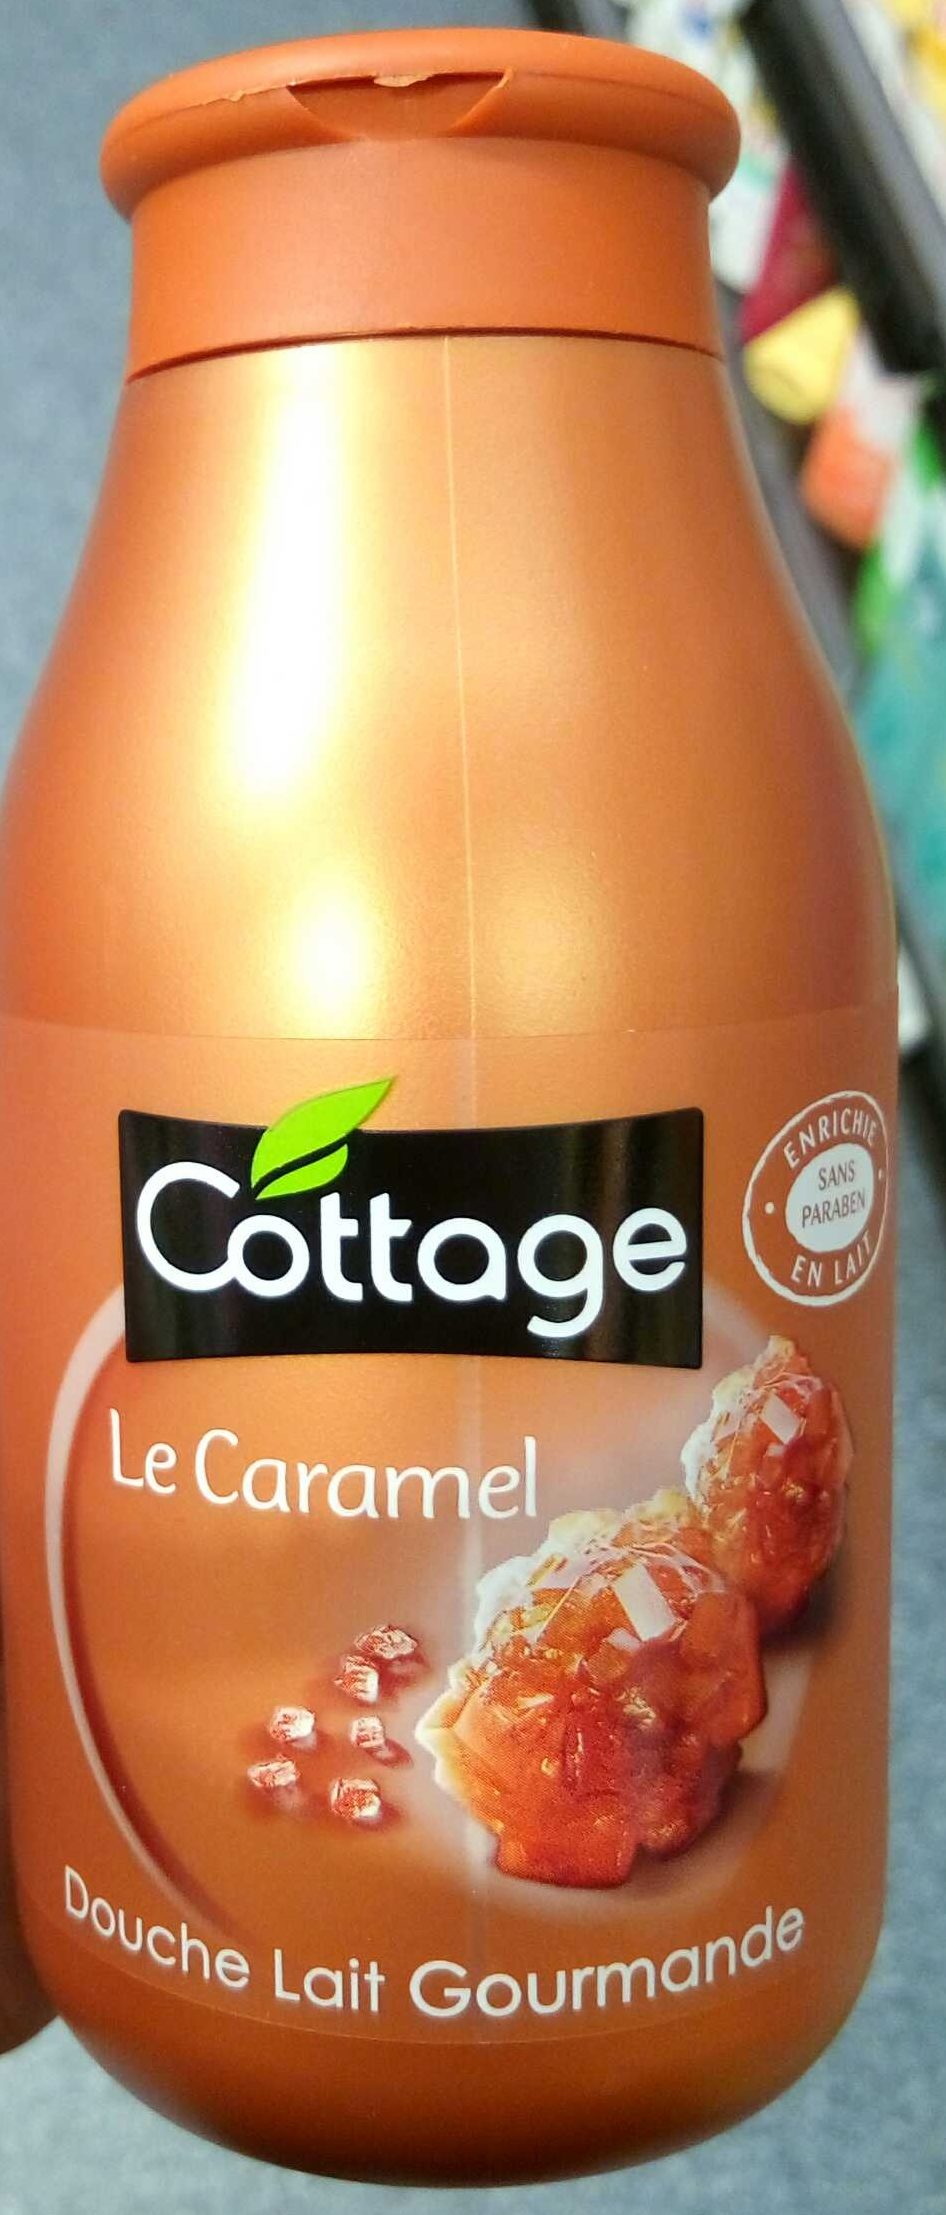 Le Caramel Douche Lait Gourmande - Product - fr